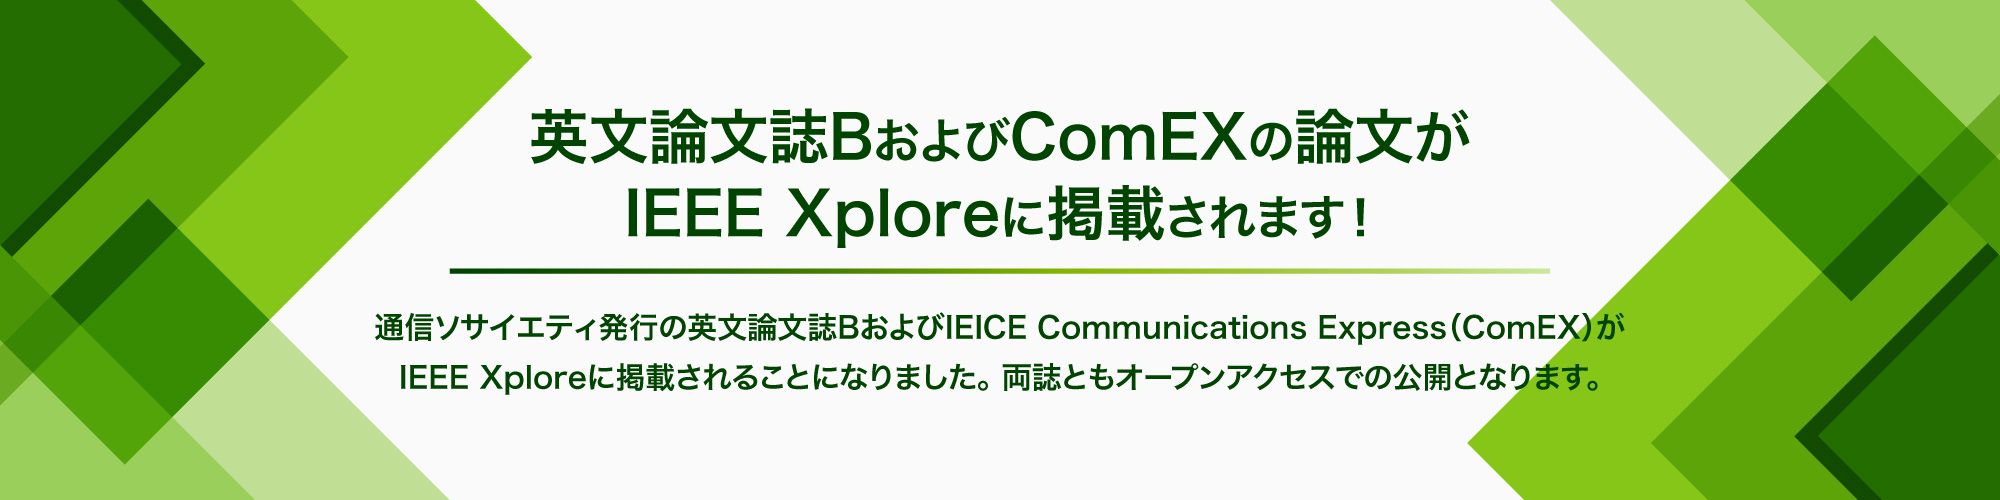 英文論文誌BおよびComEXの論文がIEEE Xplore に掲載されます！